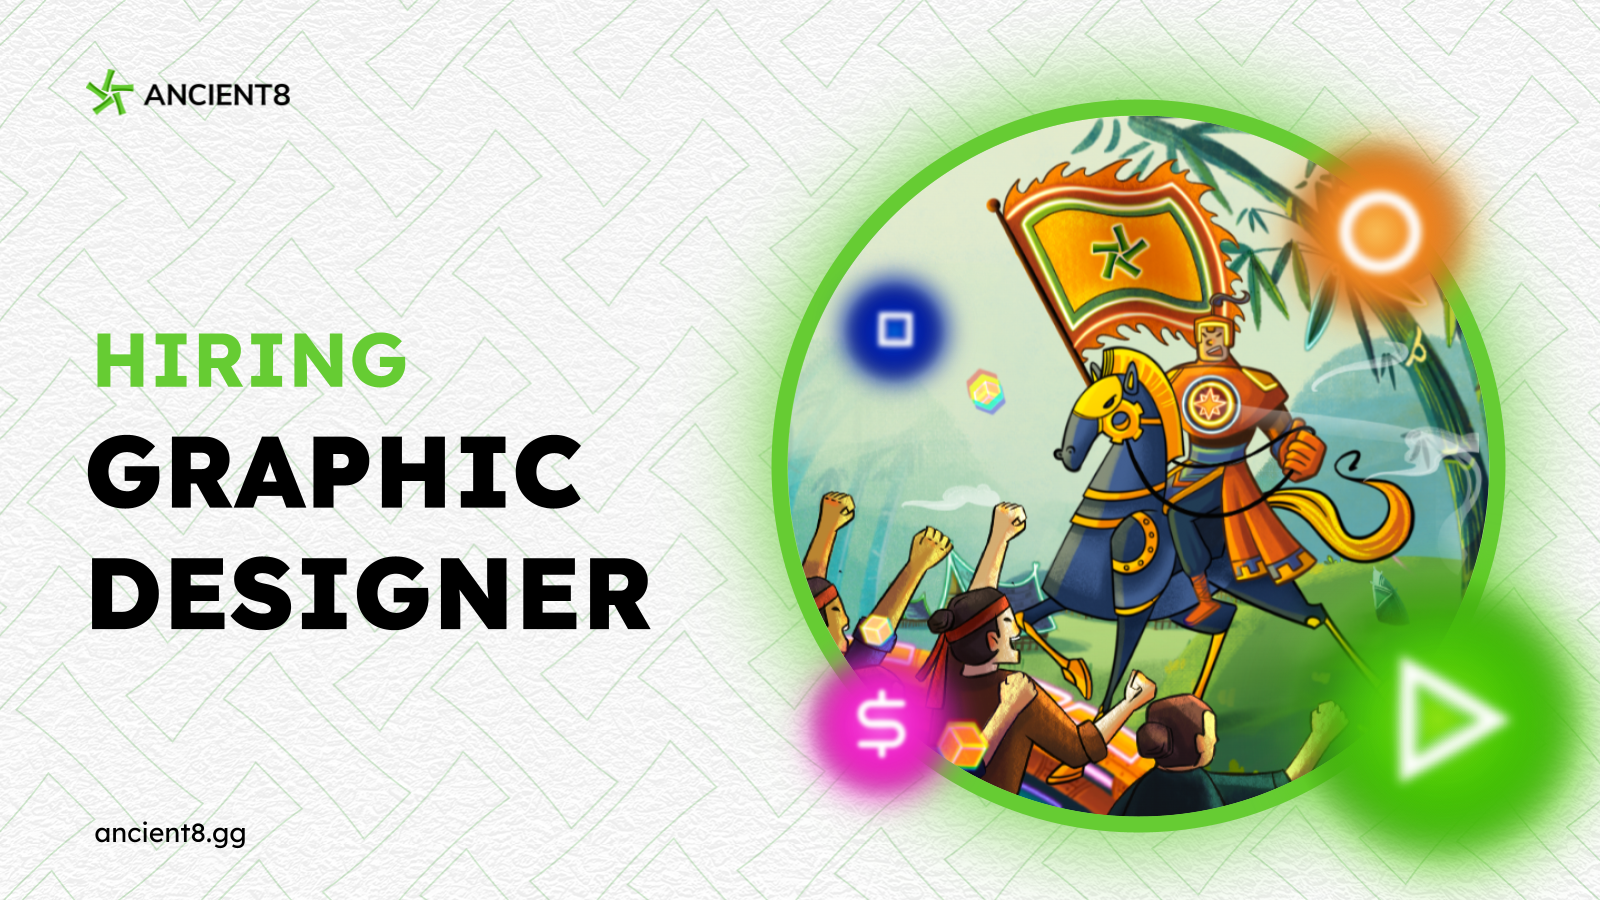 Ancient8 - Graphic Designer [Full-time]